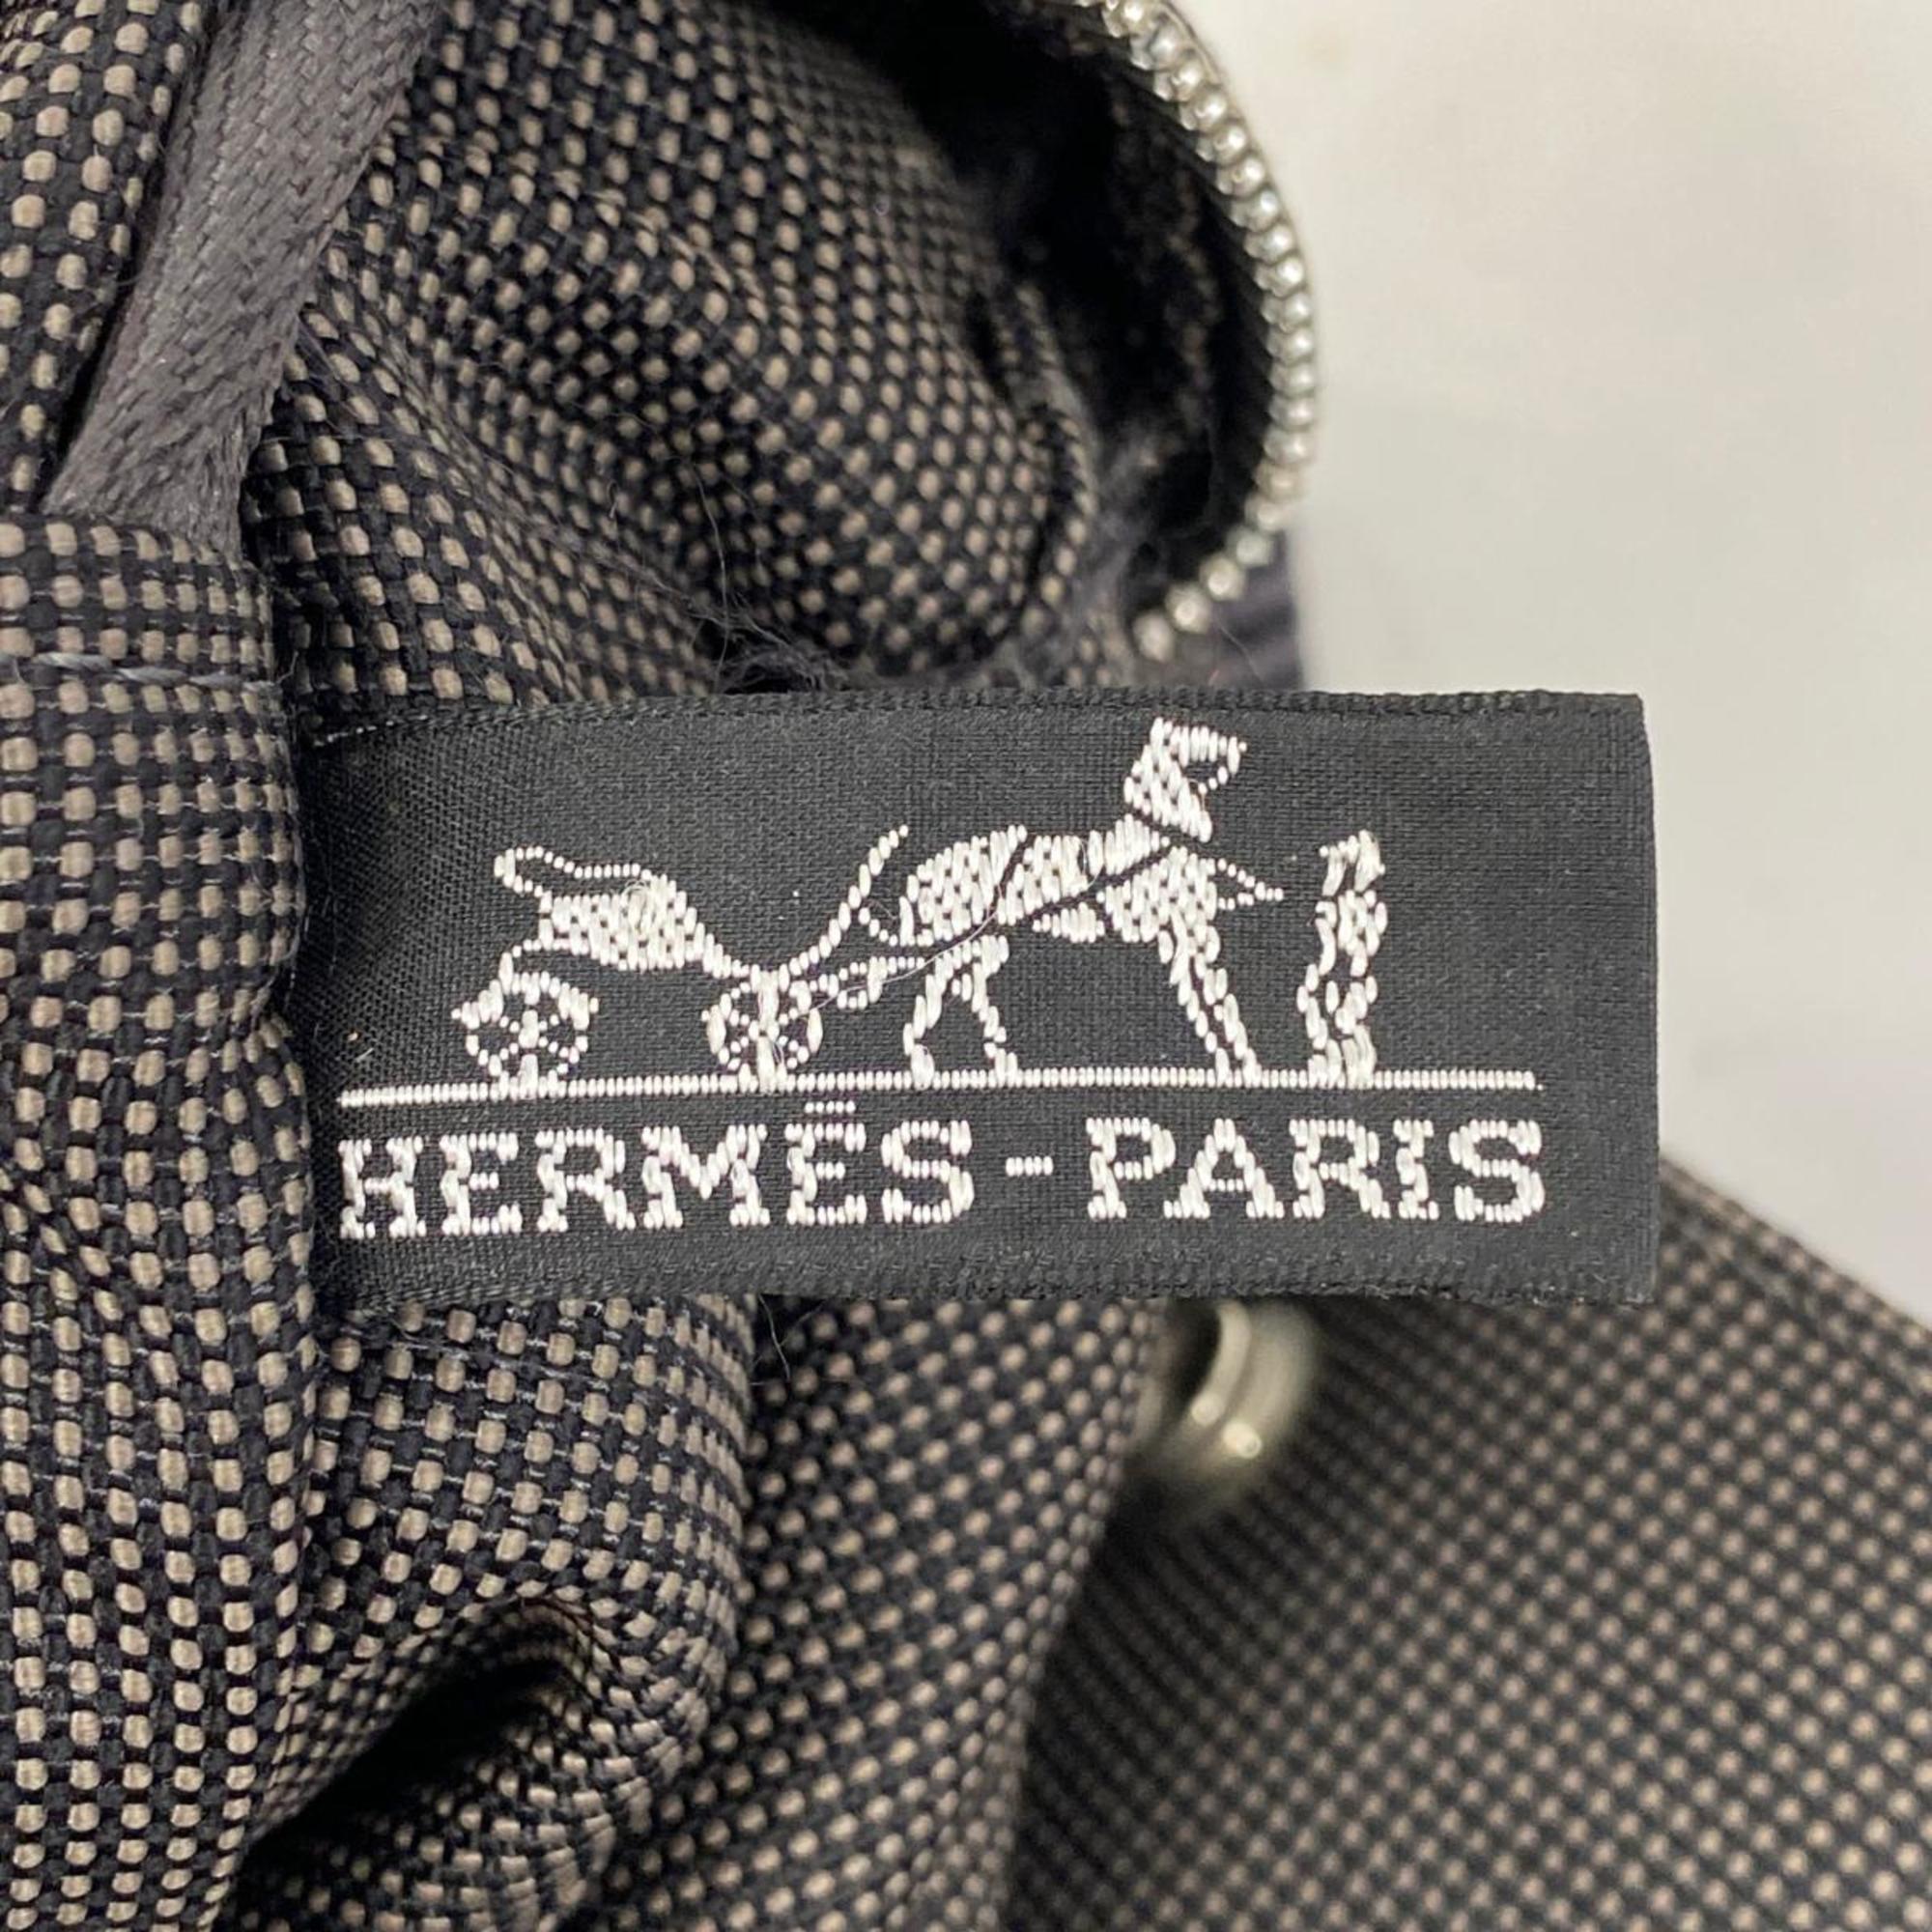 エルメス(Hermes) エルメス トートバッグ エールラインMM キャンバス グレー   メンズ レディース